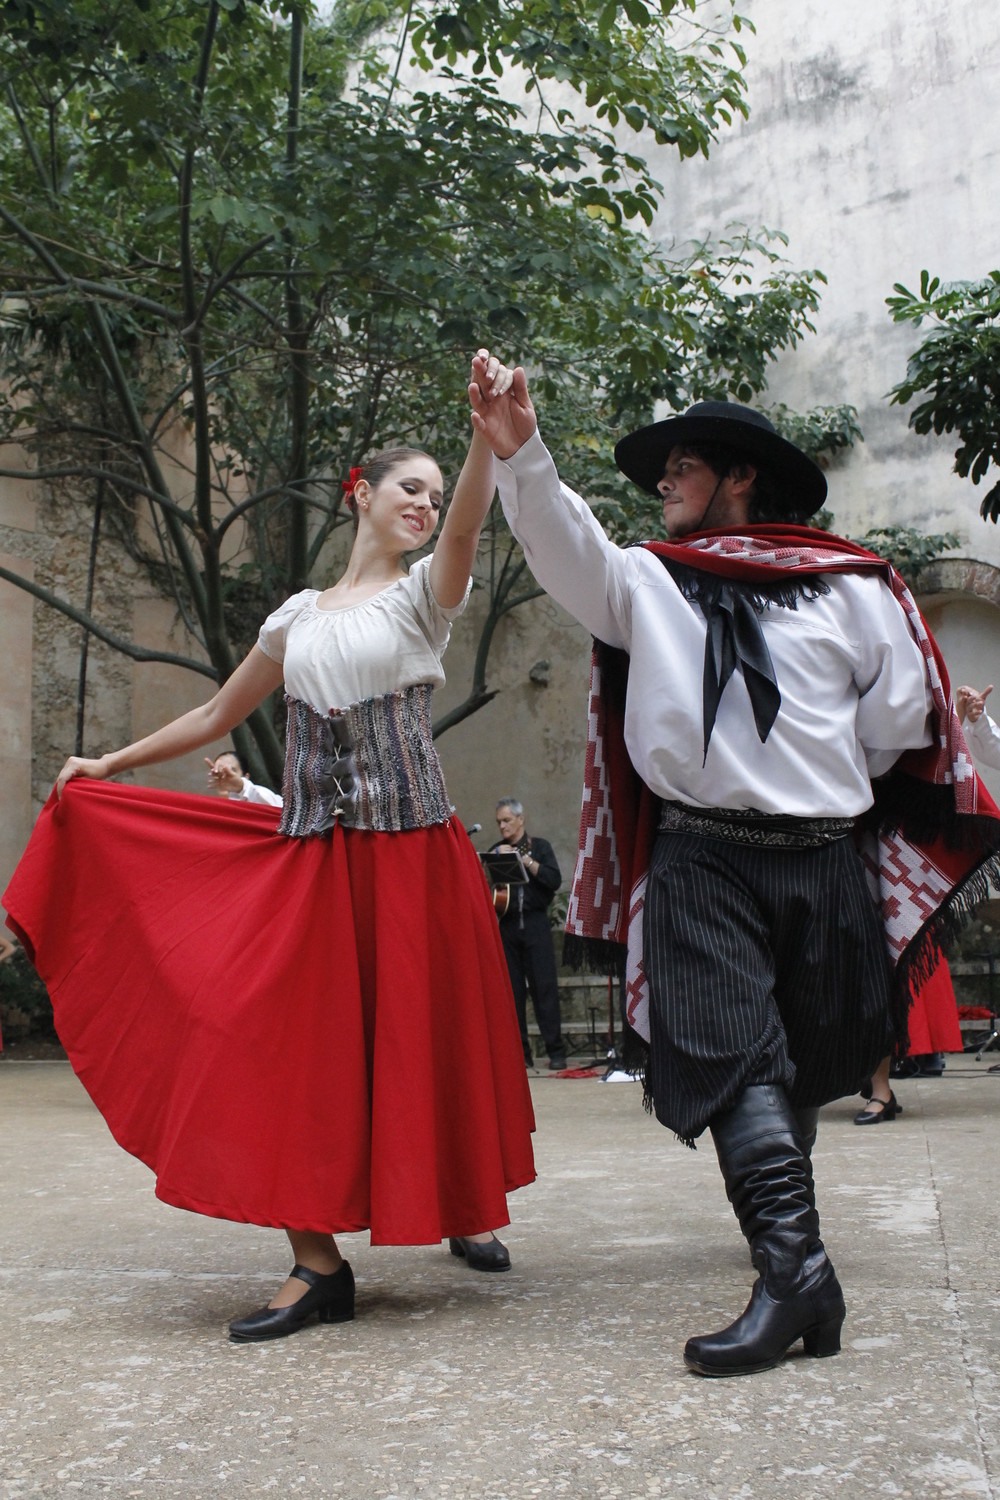 Khi nói đến văn hóa đất nước Uruguay, không thể không kể đến điệu nhảy Tango. Ảnh: Linked in